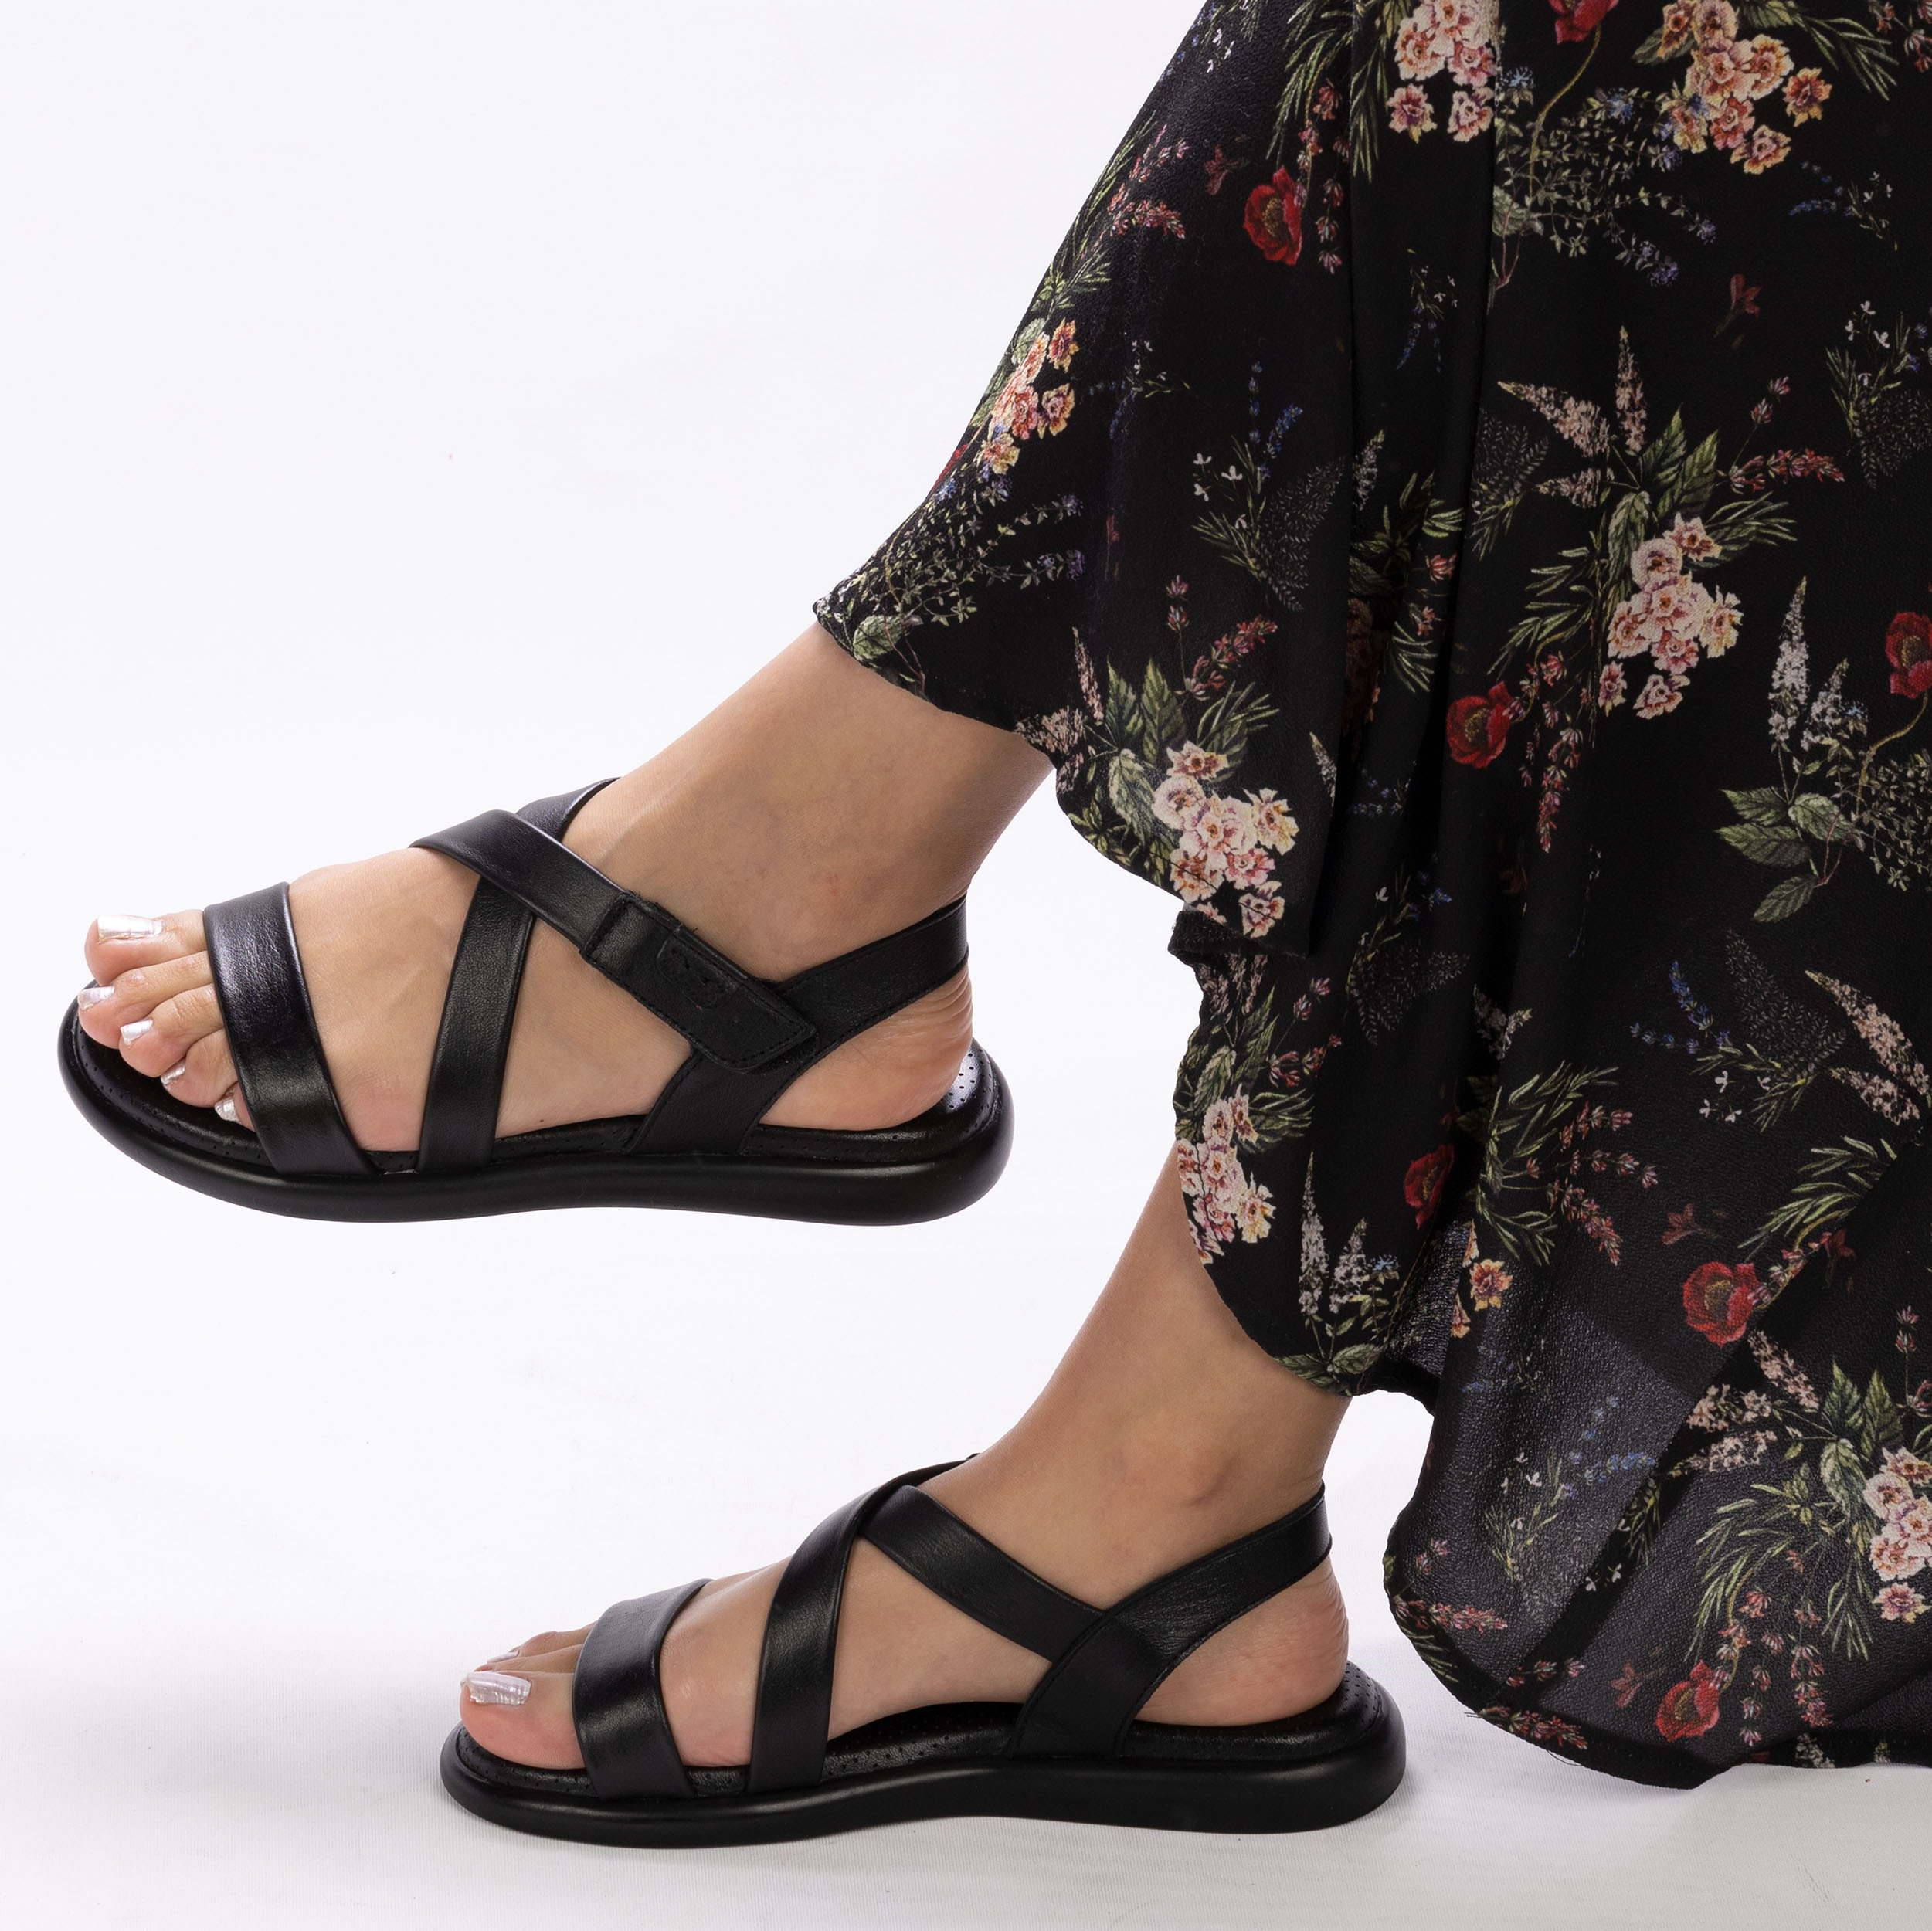 Kadın Hakiki Deri Günlük Yumuşak Tabanlı Hafif Tasarım Sandalet, Renk: Siyah, Beden: 37